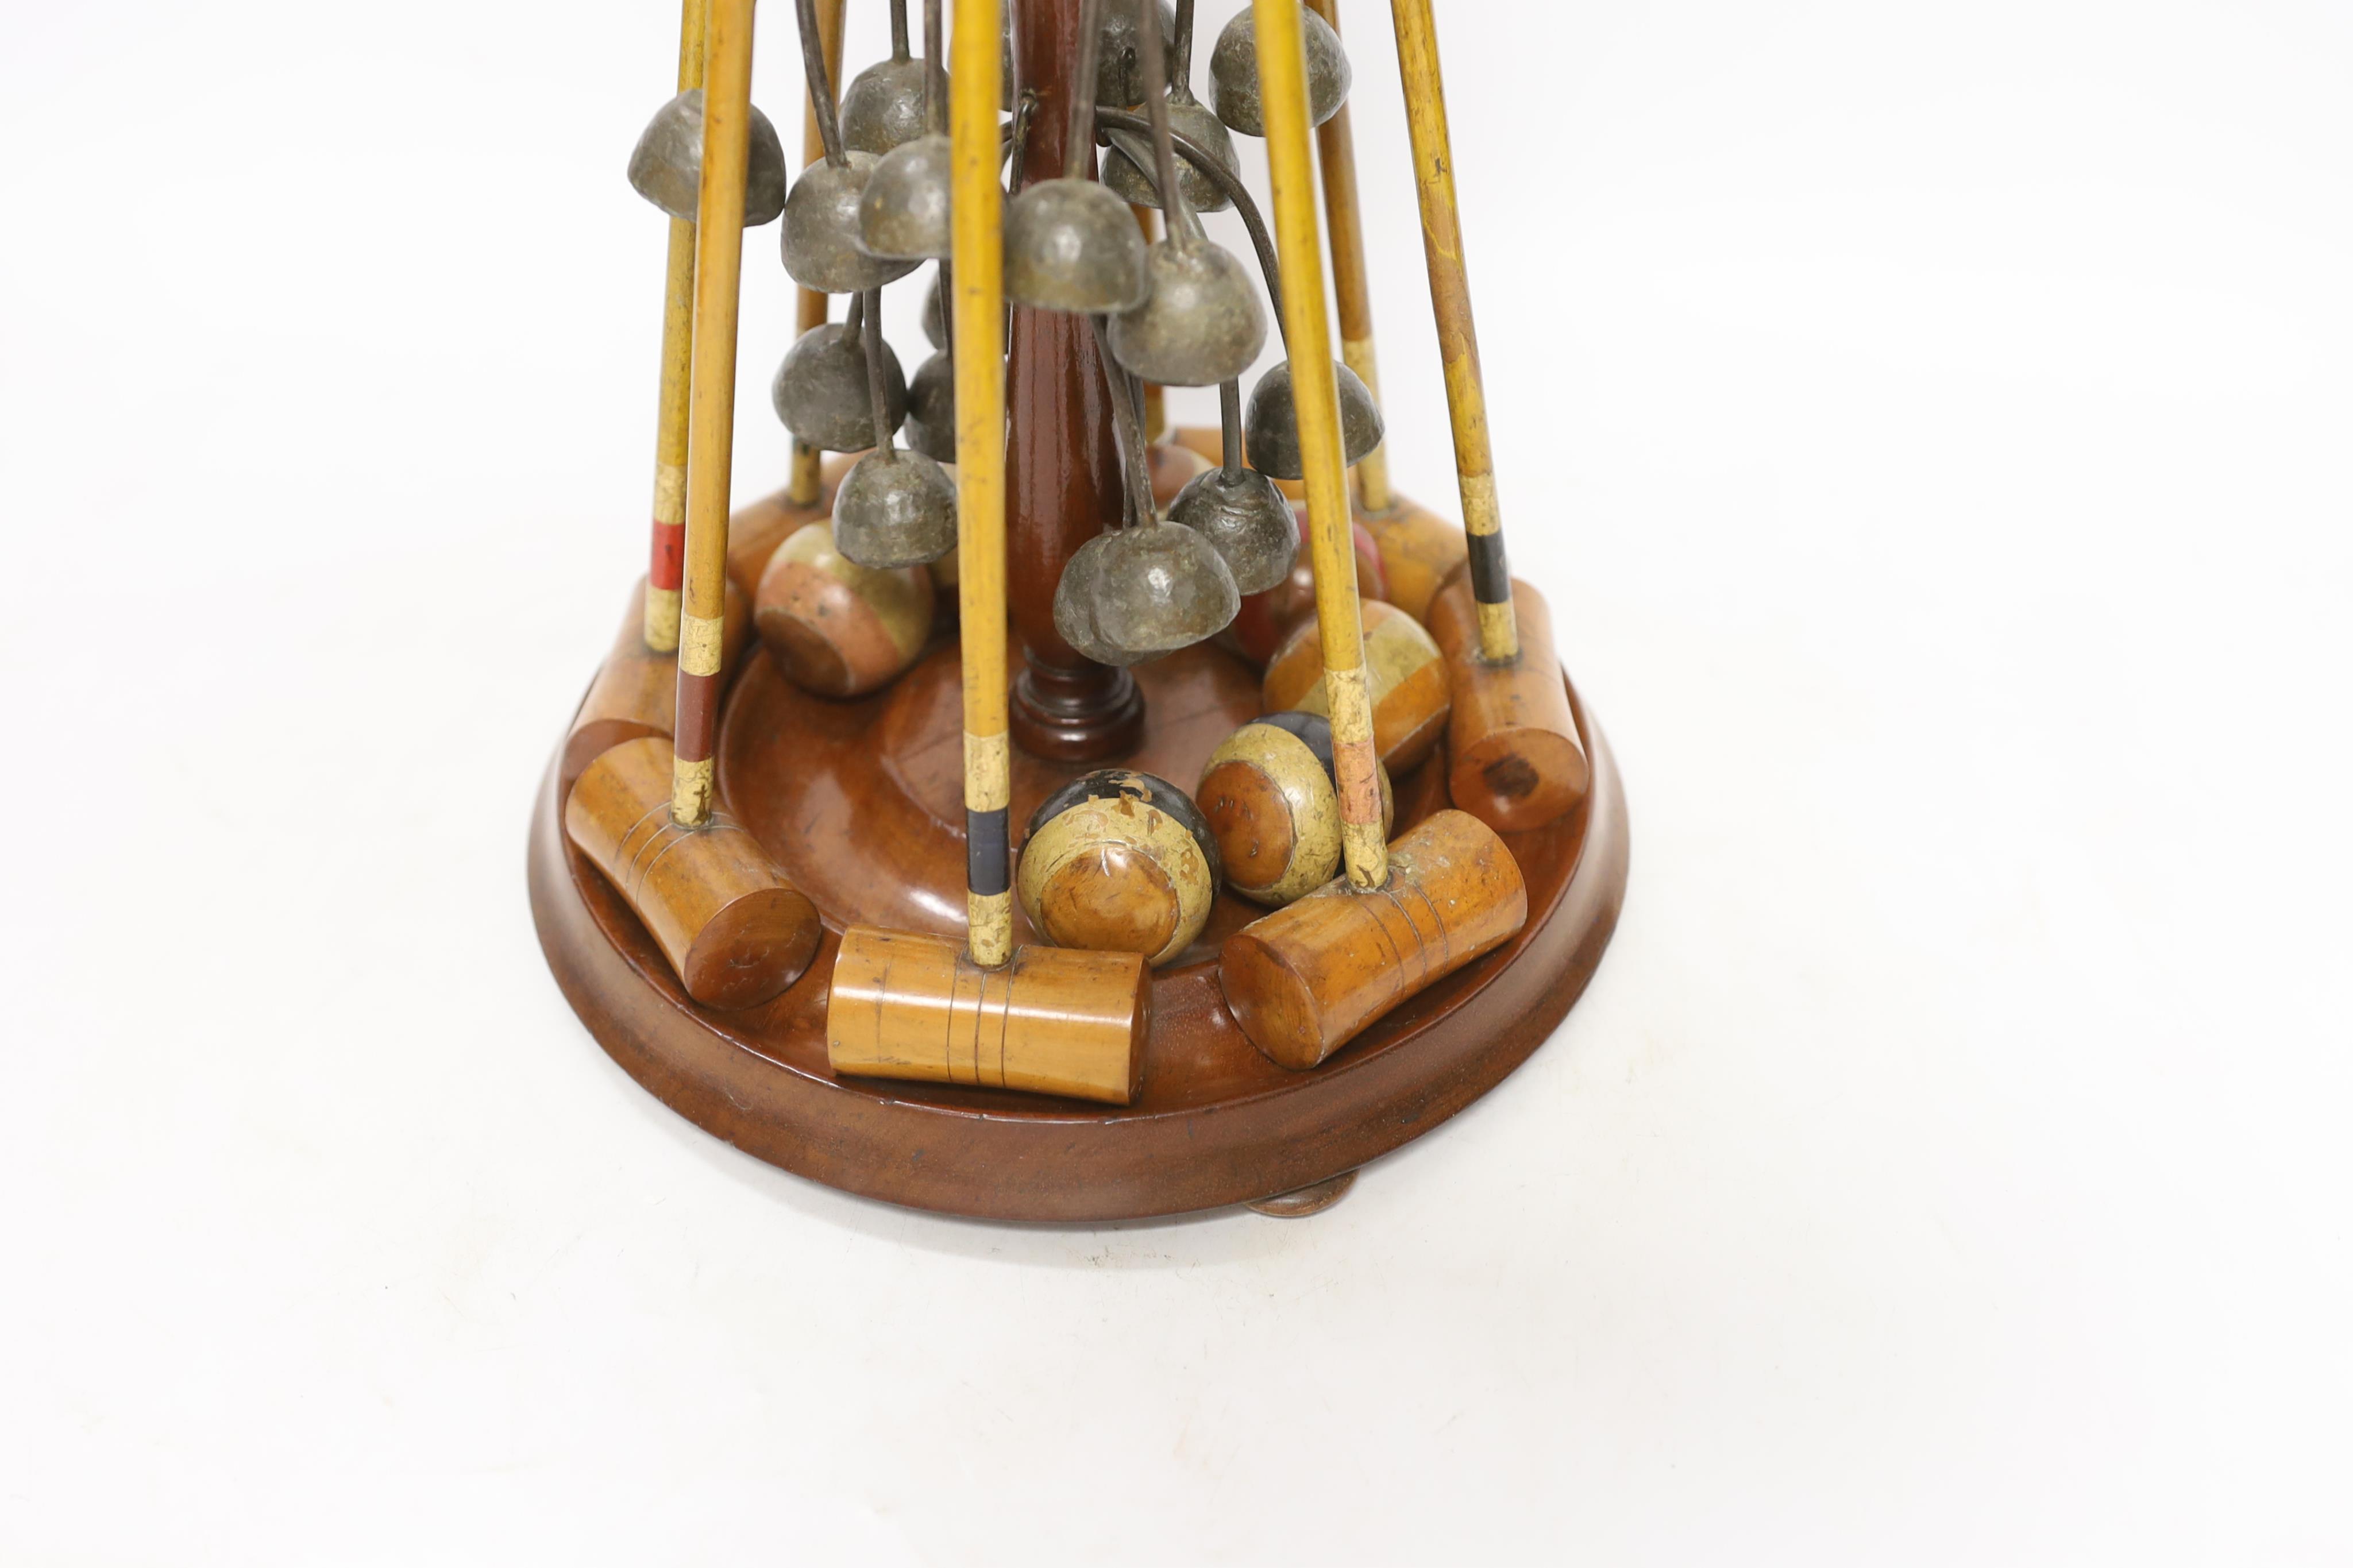 A Victorian Parlour croquet set, 33cm